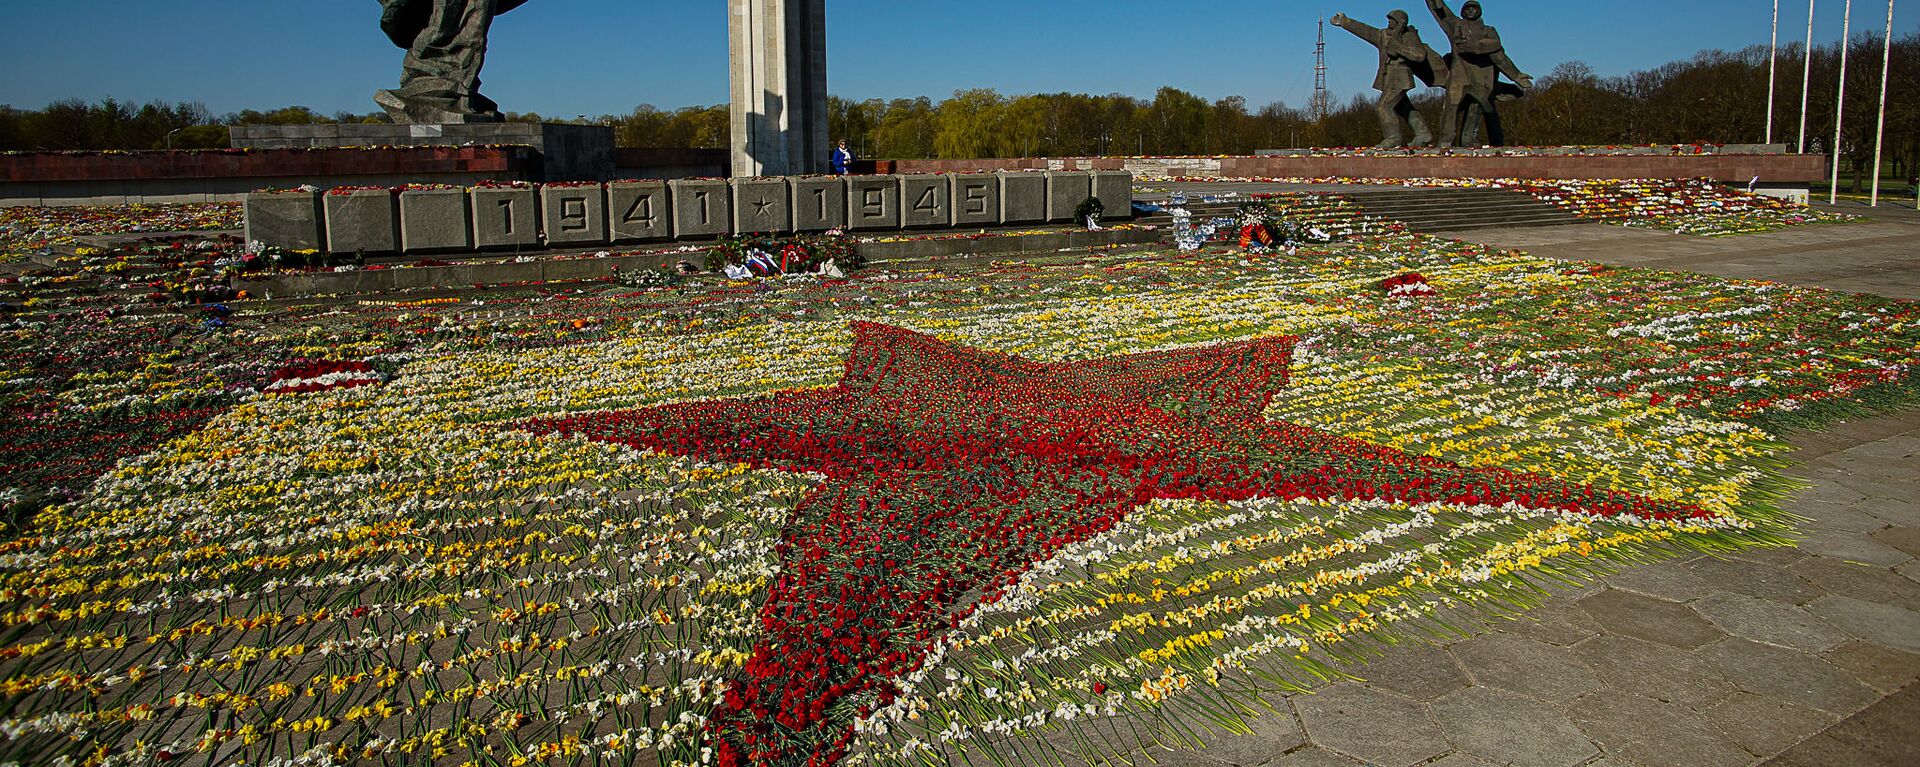 Волонтеры выложили красную звезду из цветов у памятника Освободителям - Sputnik Латвия, 1920, 10.05.2021